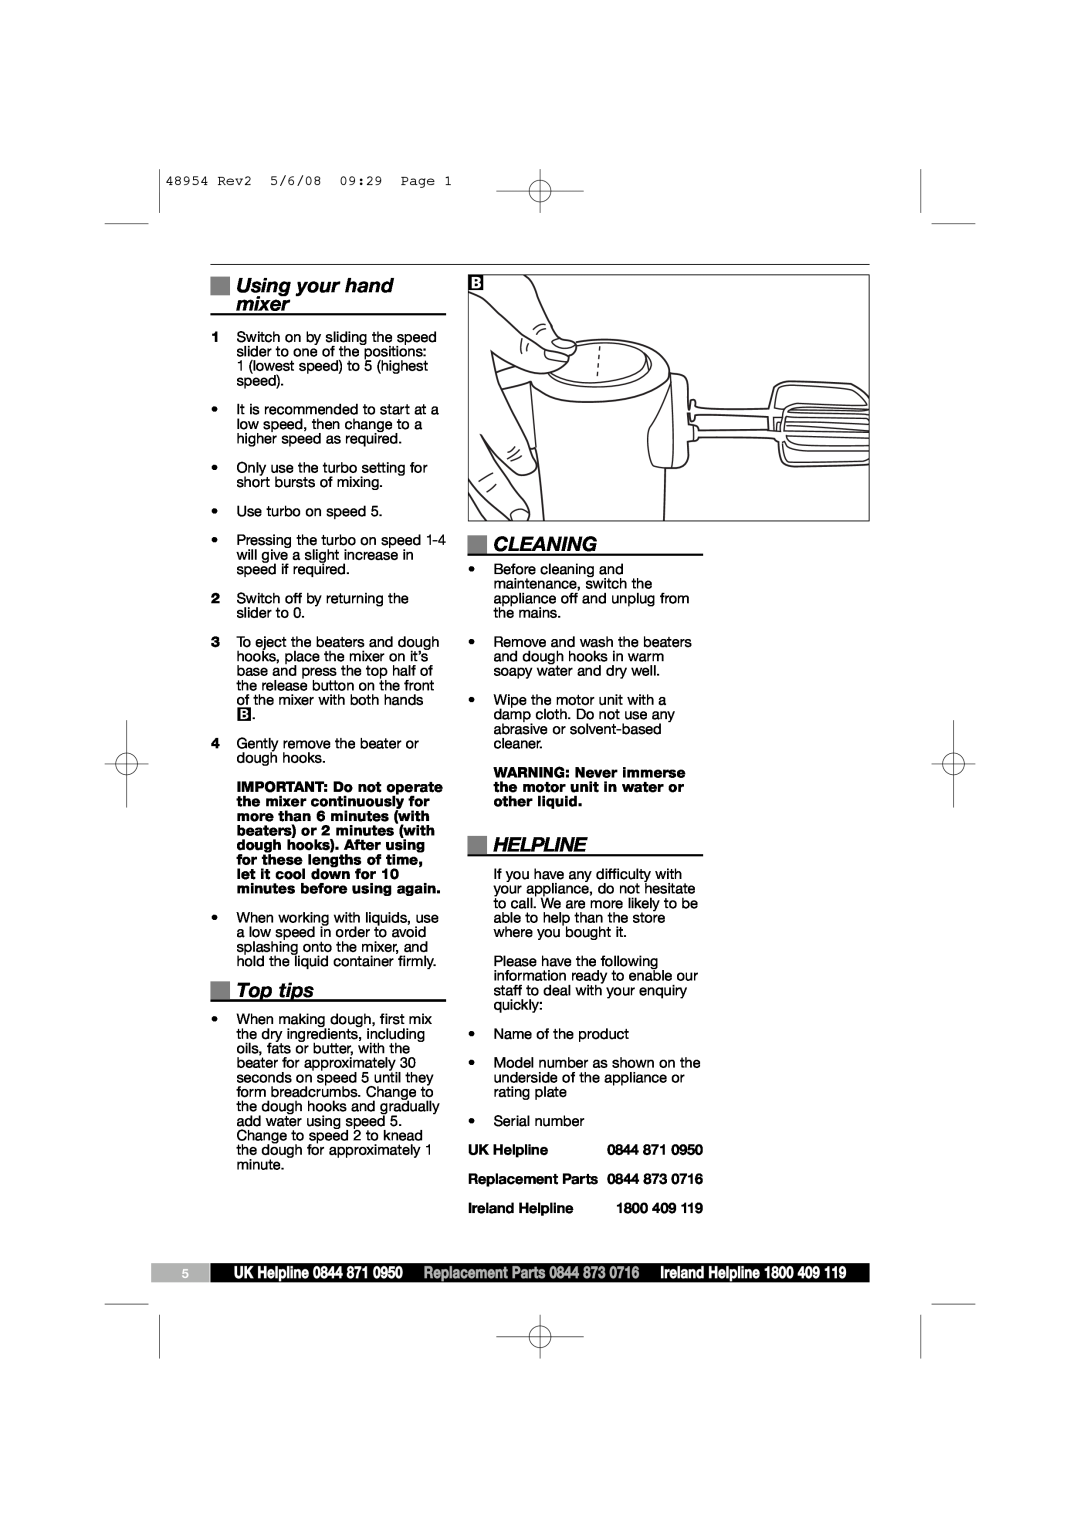 Morphy Richards 48954 manual Using your hand mixer, Top tips, Cleaning, UK Helpline, 0844 873, Ireland Helpline 